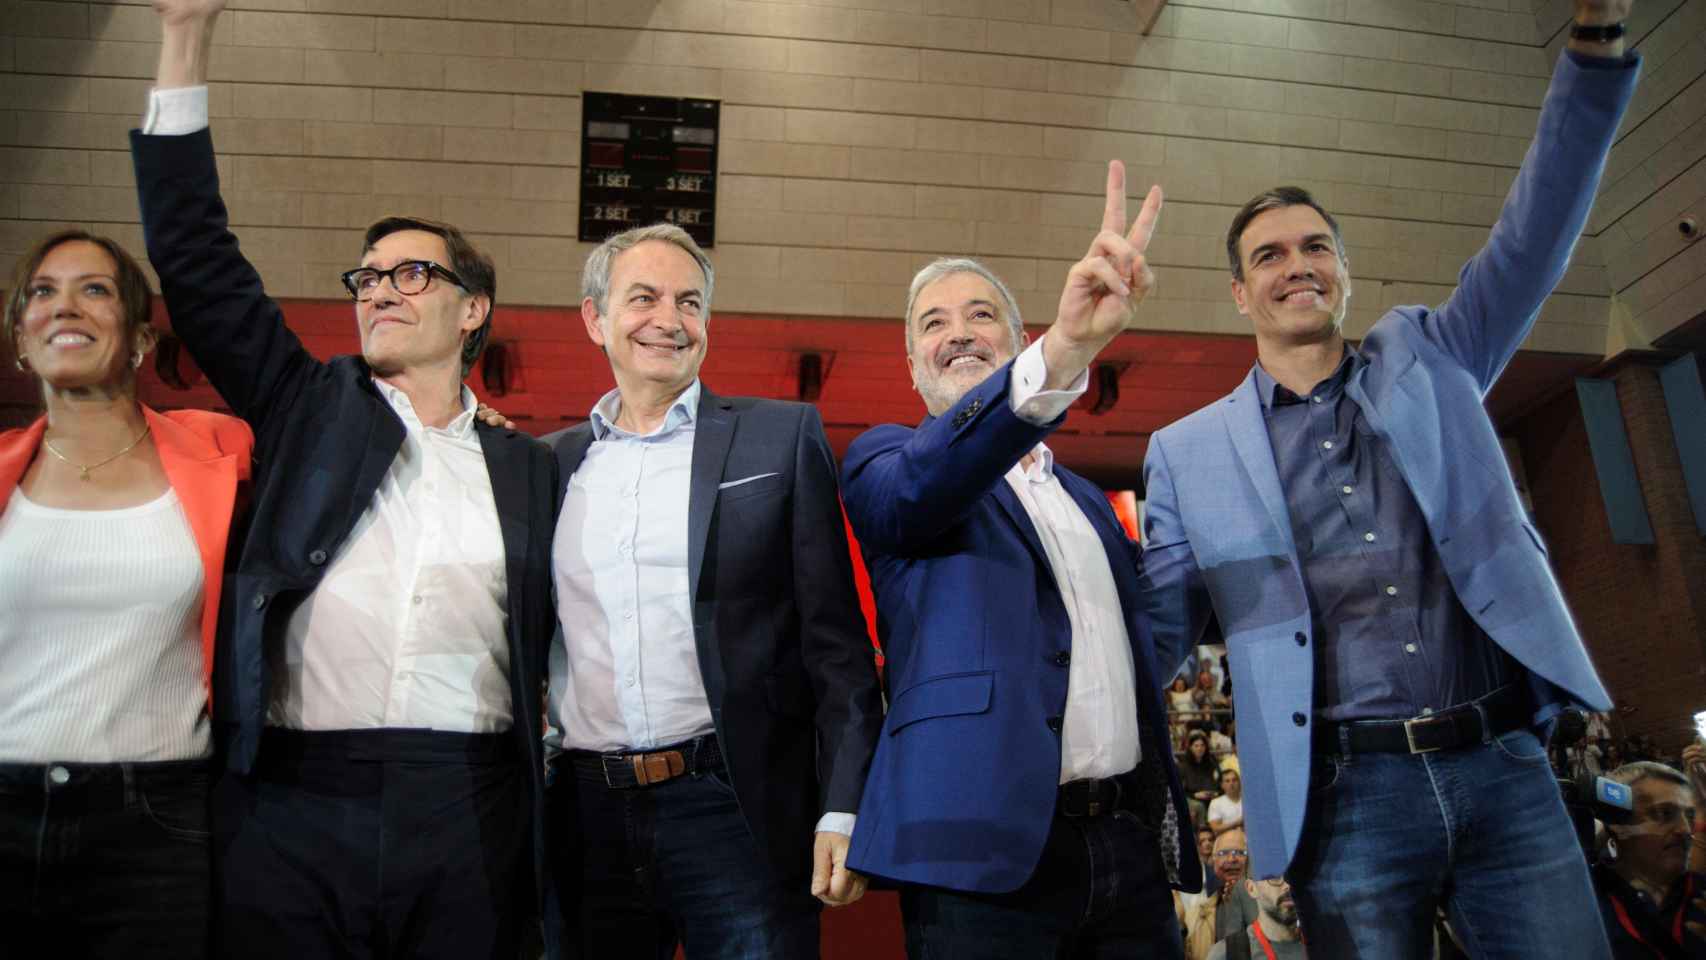 Salvador Illa, José Luis Rodríguez Zapatero, Jaume Collboni y Pedro Sánchez, en el cierre de campaña del PSOE en Barcelona.